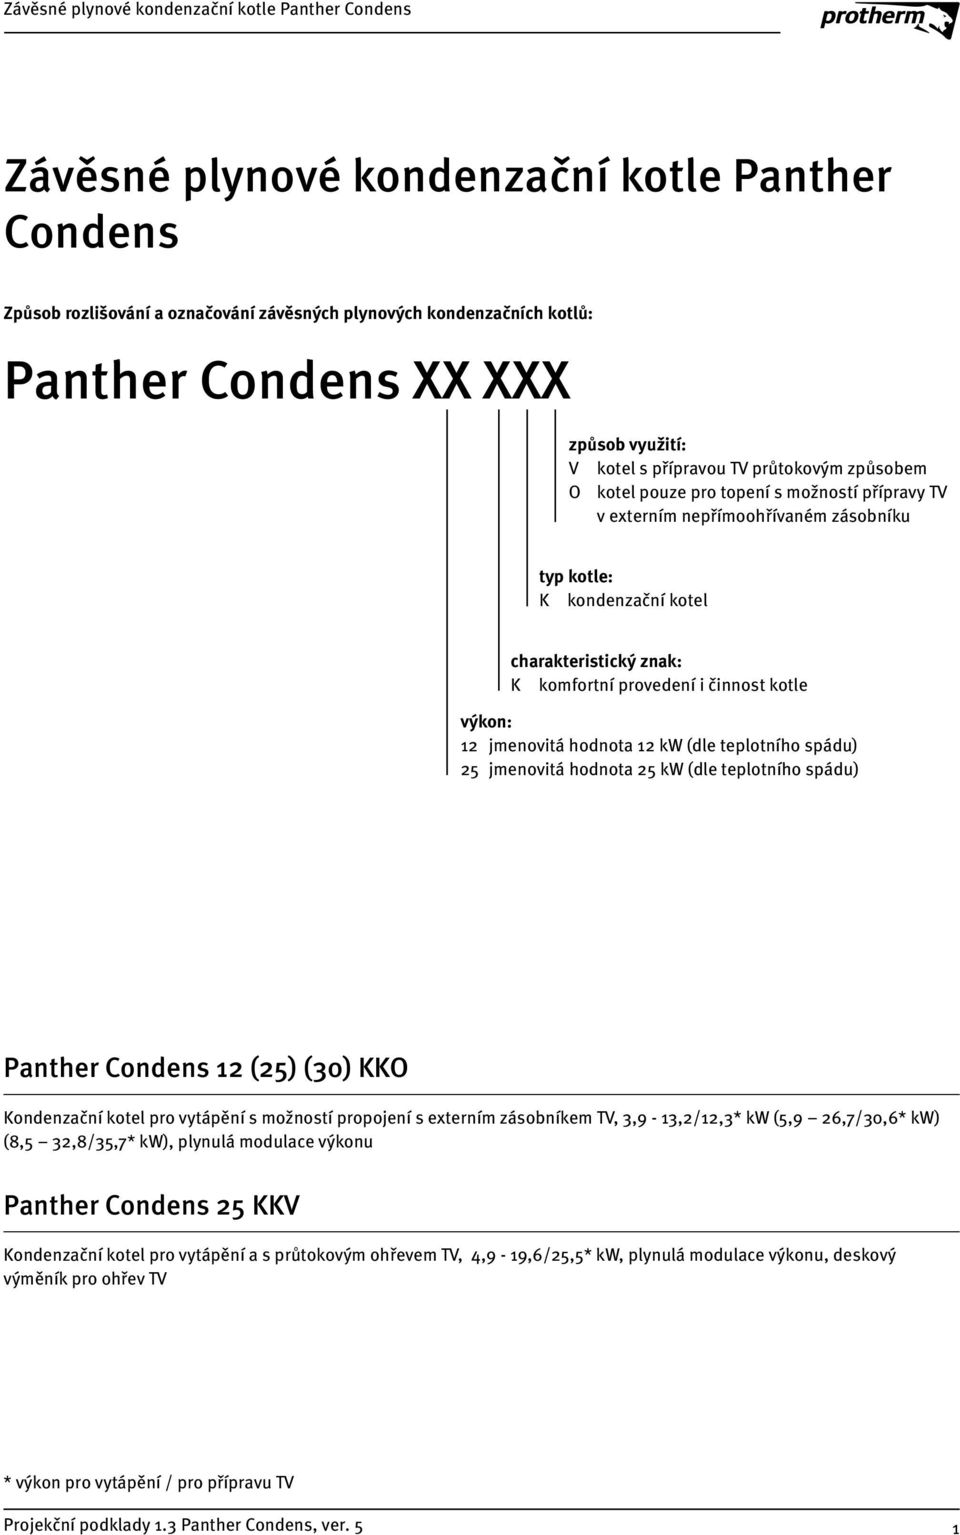 jmenovitá hodnota kw (dle teplotního spádu) 5 jmenovitá hodnota 5 kw (dle teplotního spádu) Panther Condens (5) (0) KKO Kondenzační kotel pro vytápění s možností propojení s externím zásobníkem TV,,9